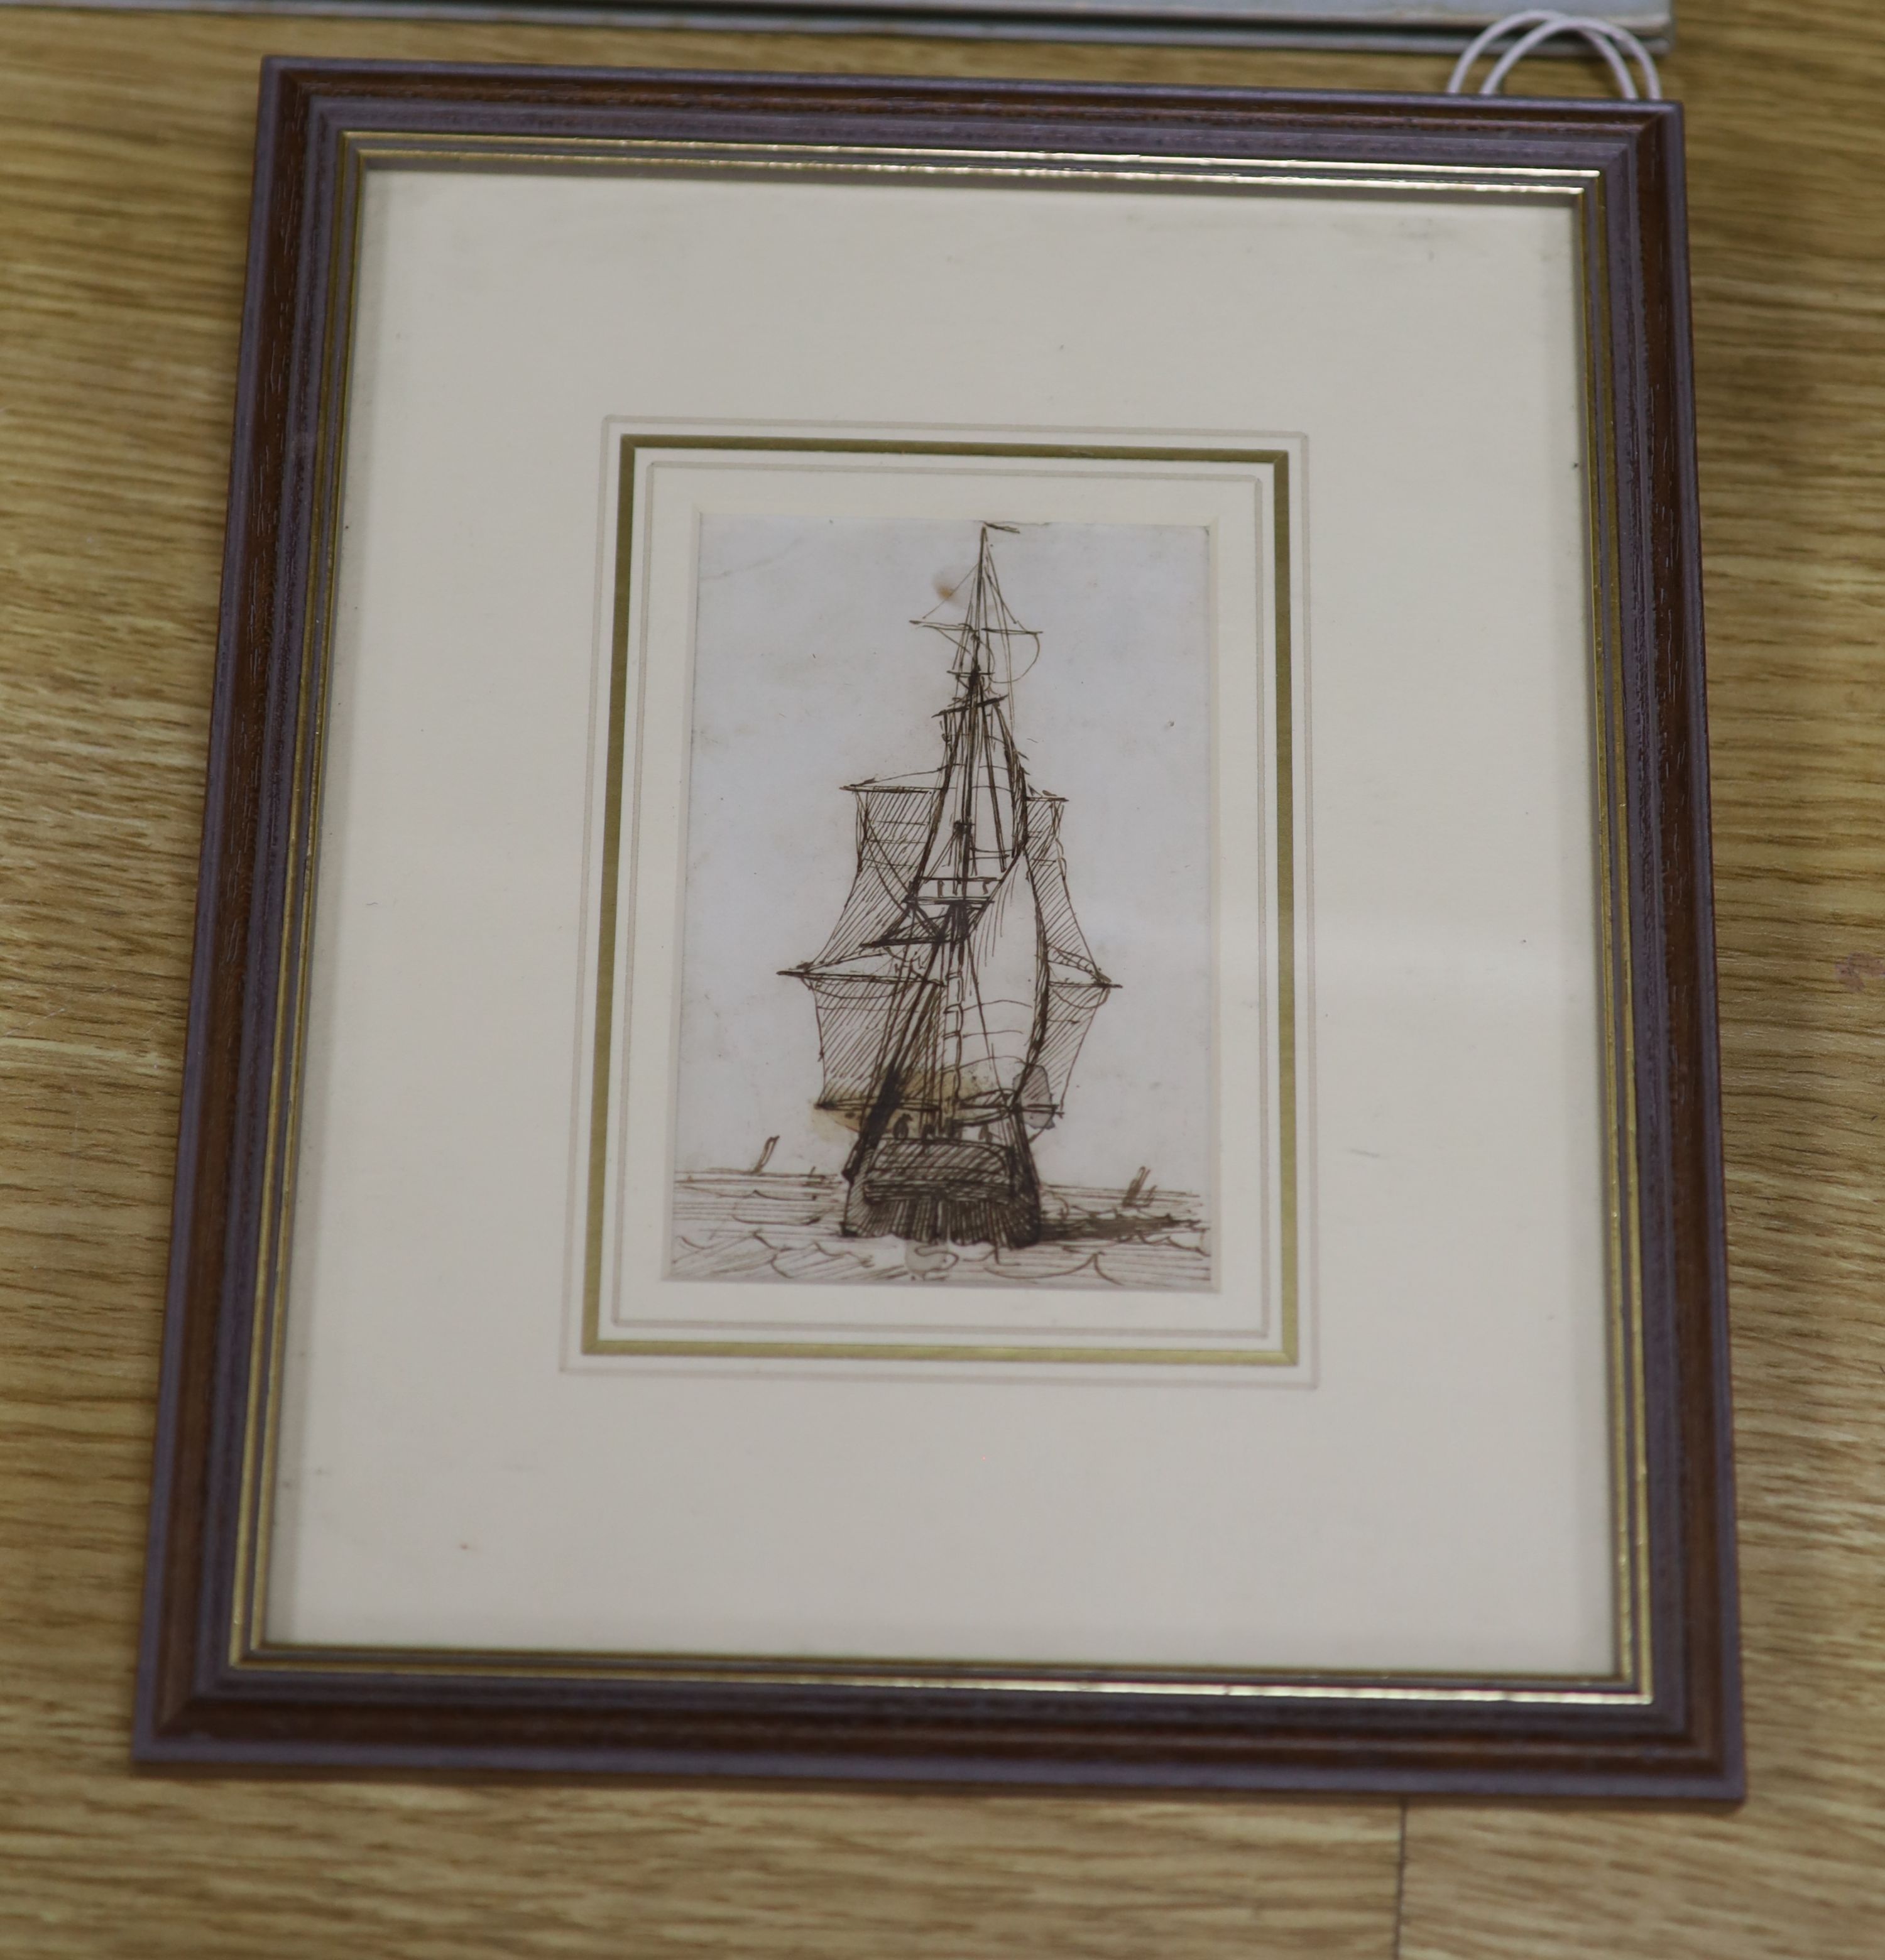 Richard Henry Nibbs (1816-1893), pen and ink drawing, Sailing ship at sea, 10 x 7cm